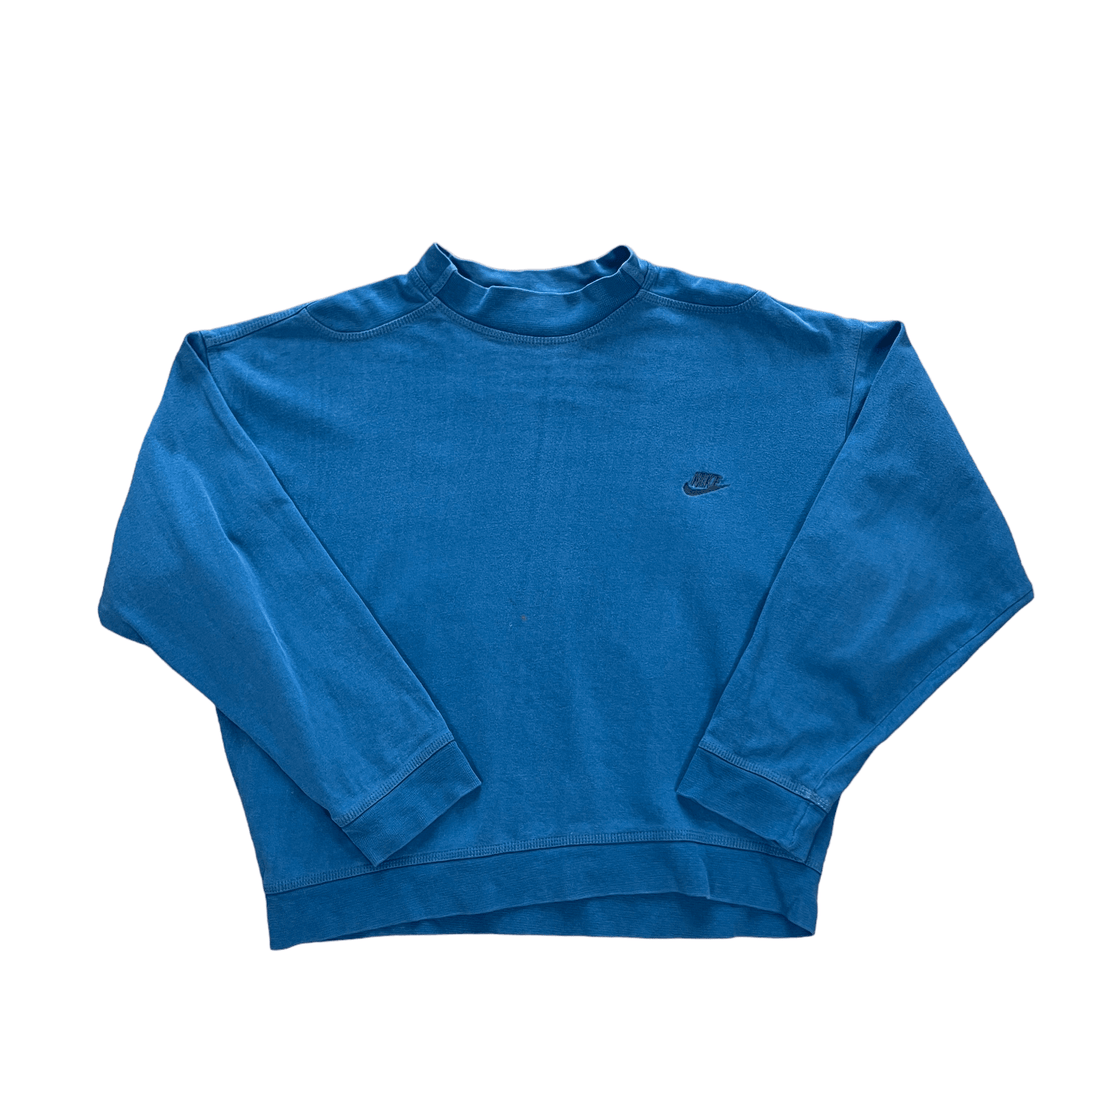 Women’s Vintage 90s Blue Nike Sweatshirt - Large - The Streetwear Studio